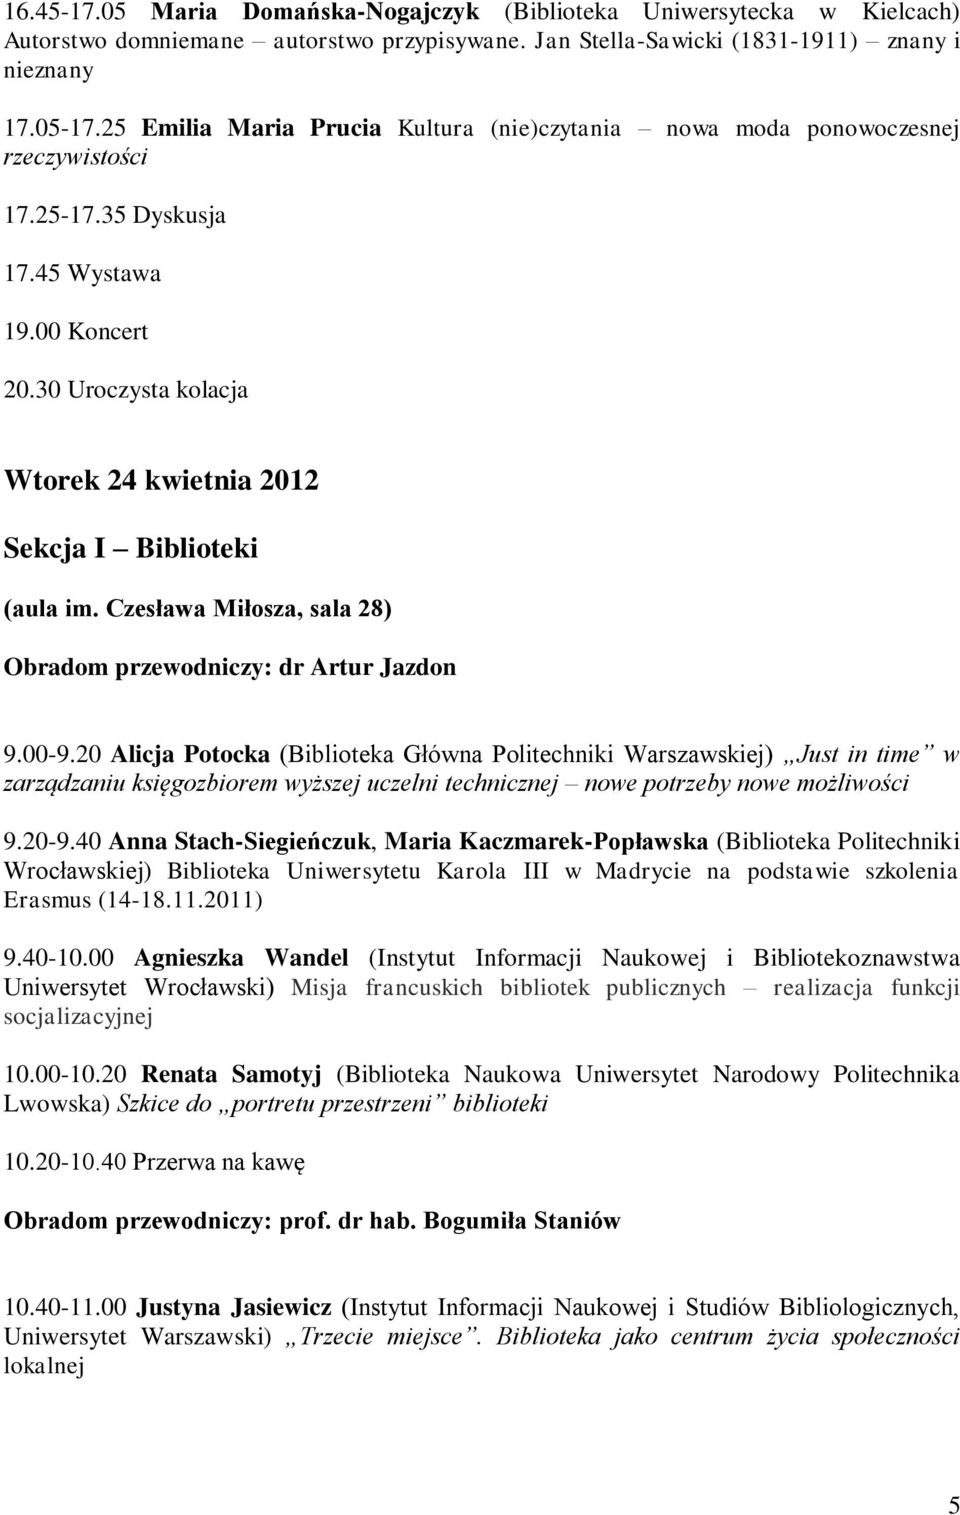 30 Uroczysta kolacja Wtorek 24 kwietnia 2012 Sekcja I Biblioteki Obradom przewodniczy: dr Artur Jazdon 9.00-9.